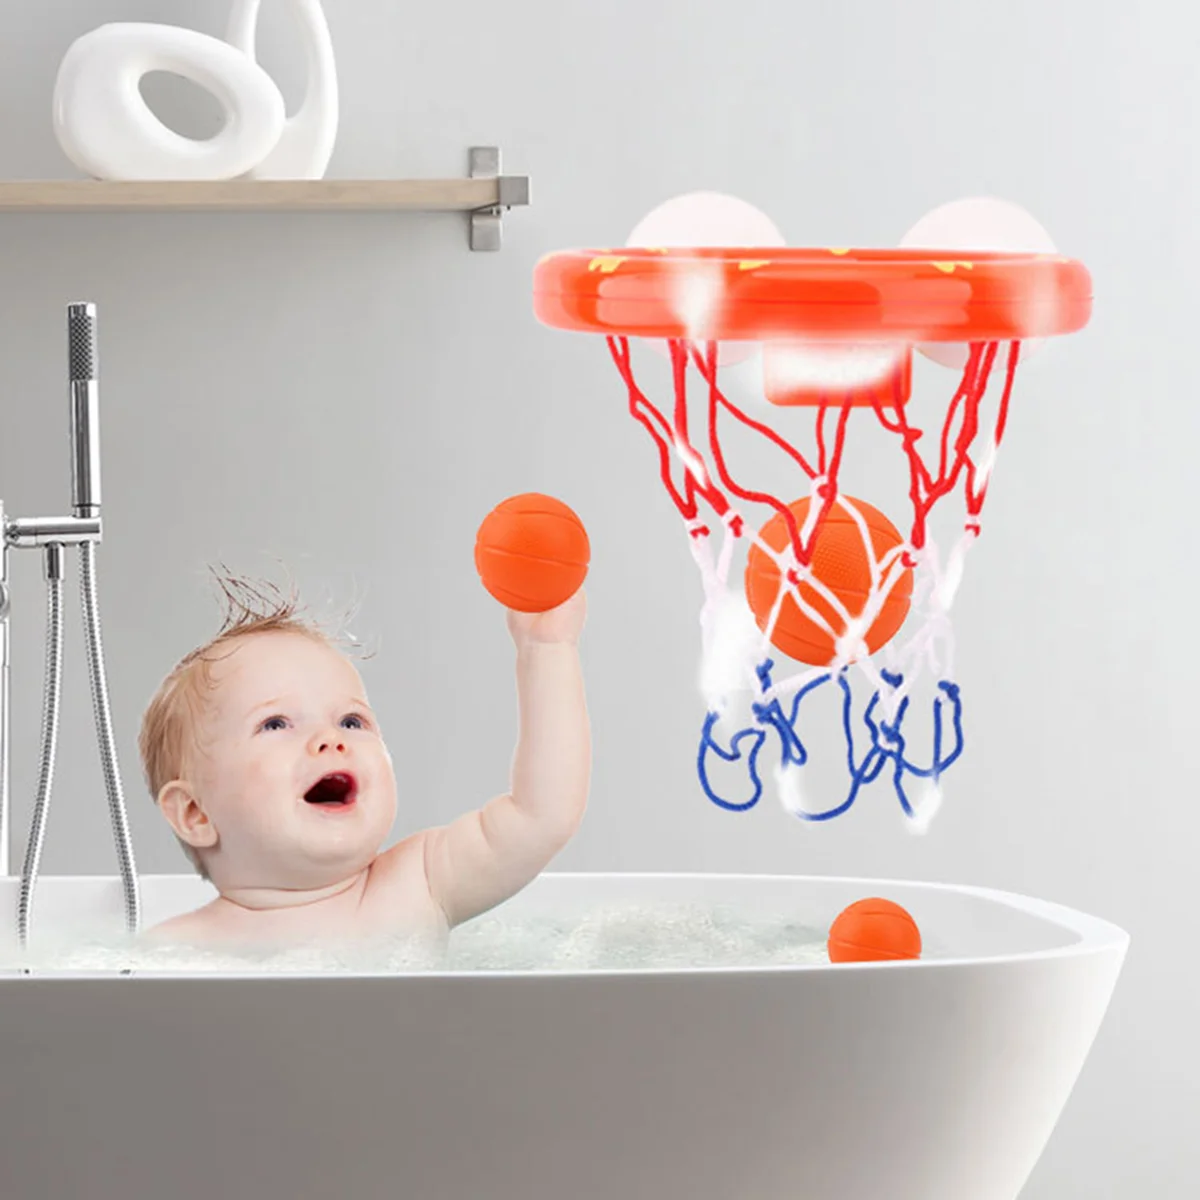 

4 шт./компл. ванна для баскетбола с 3 мячиками и игрой в ванну для детей